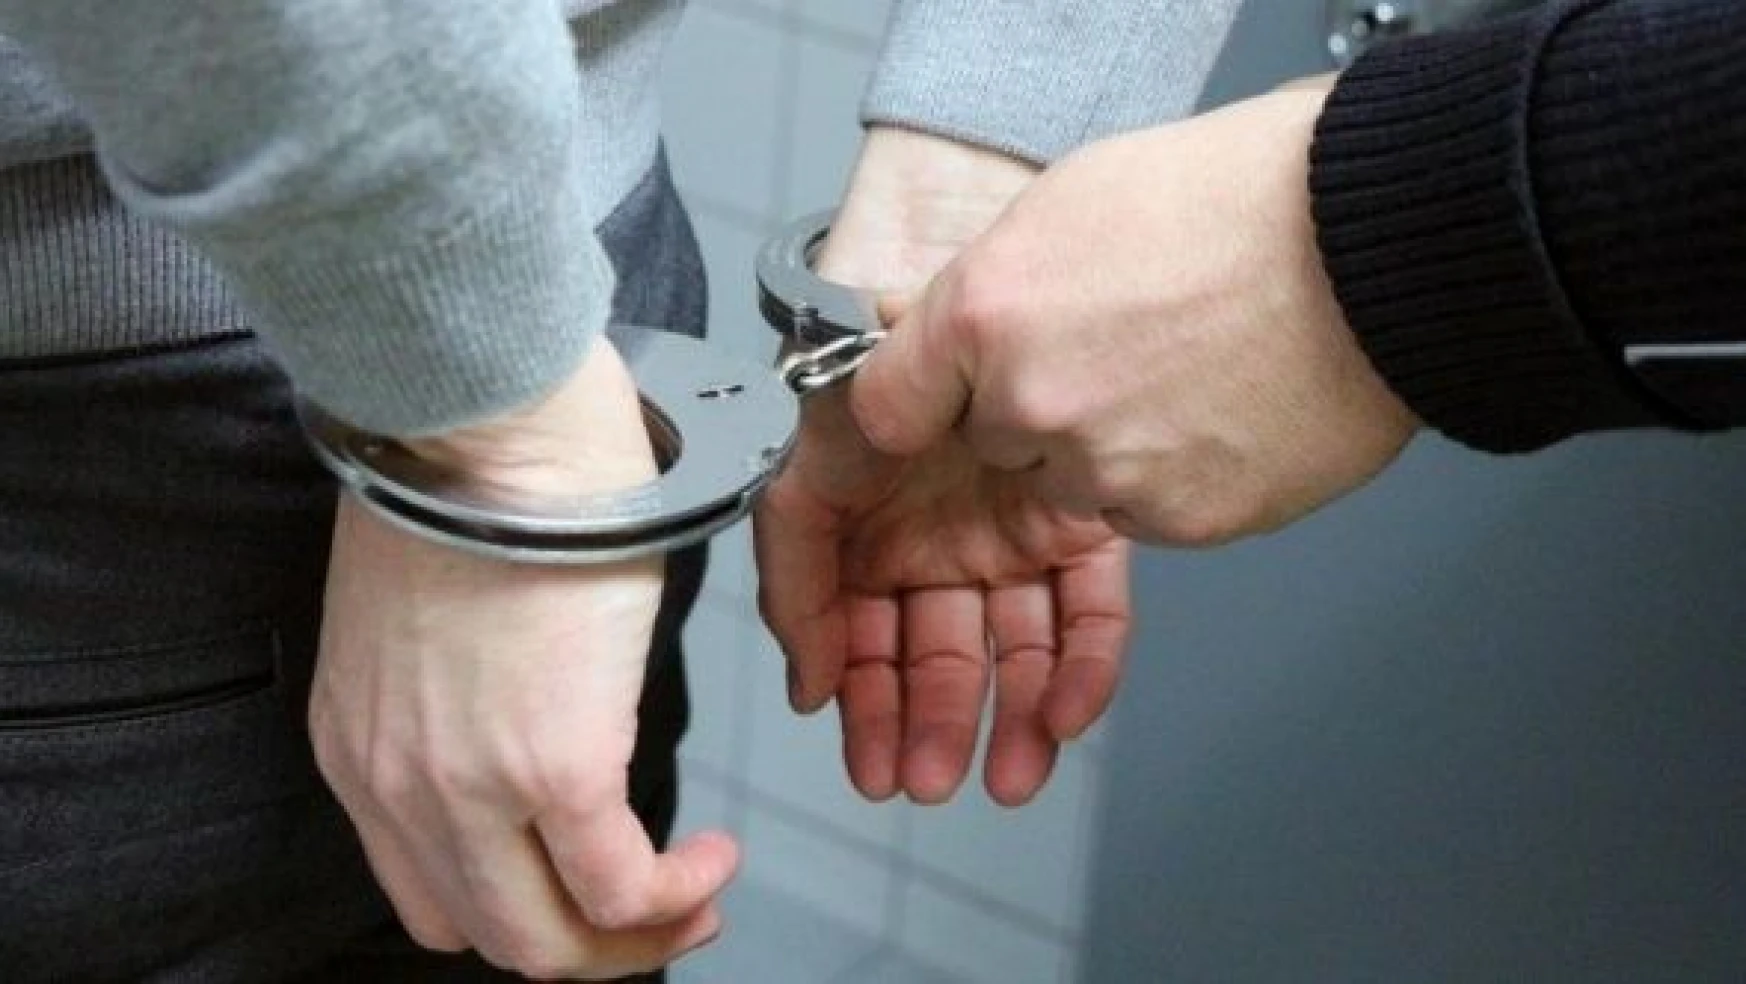 Malatya'da o suçlara karışan 12 şüpheli tutuklandı!